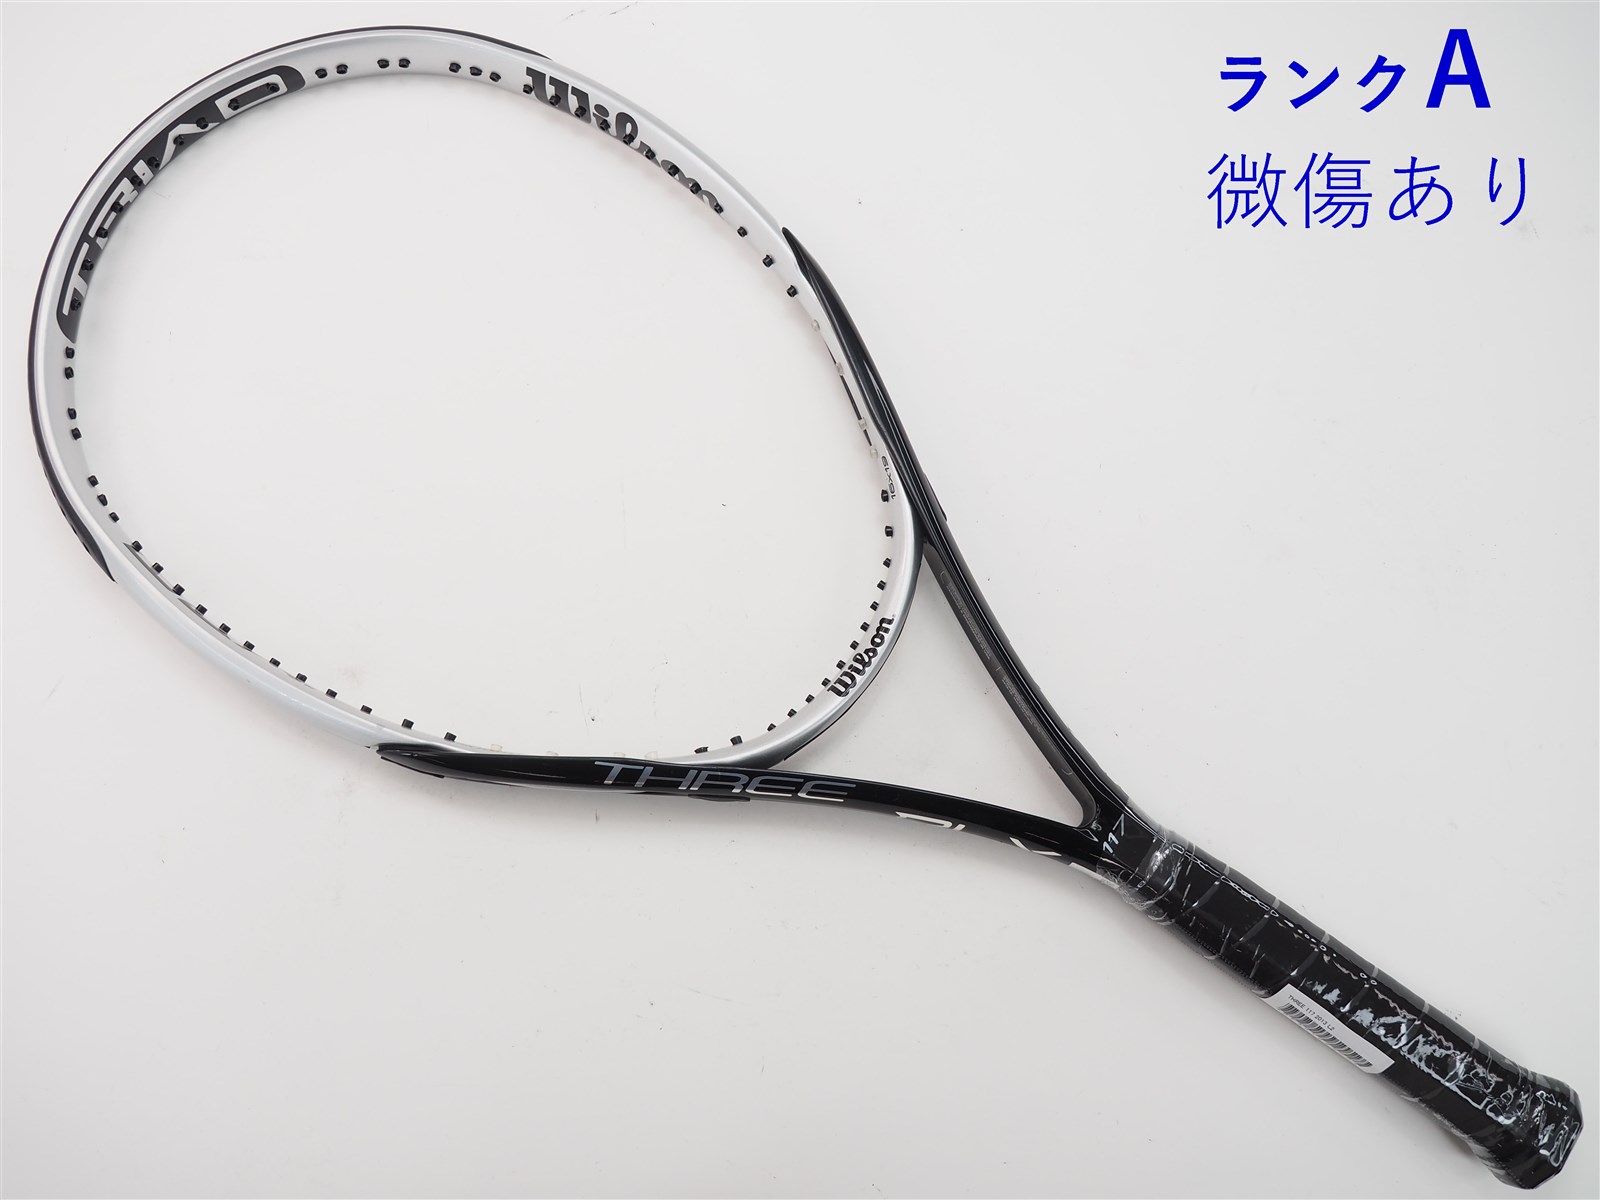 【中古】ウィルソン スリー 117 2013年モデルWILSON THREE 117 2013(L2)【中古 テニスラケット】【送料無料】